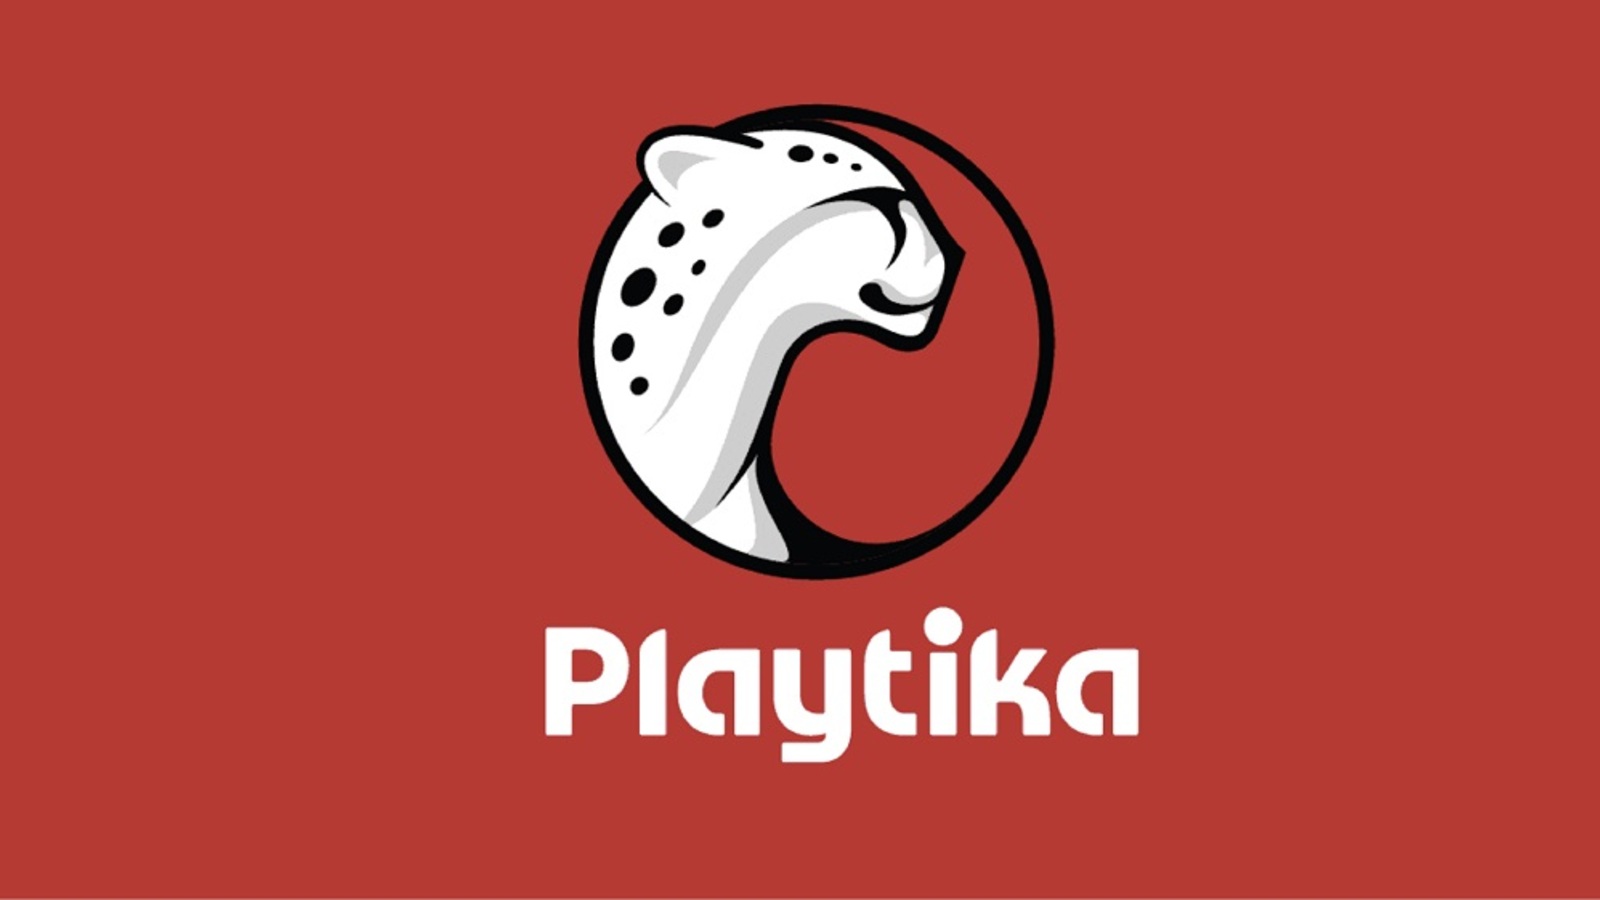 手游巨頭Playtika有意收購《憤怒的小鳥》開發商Rovio